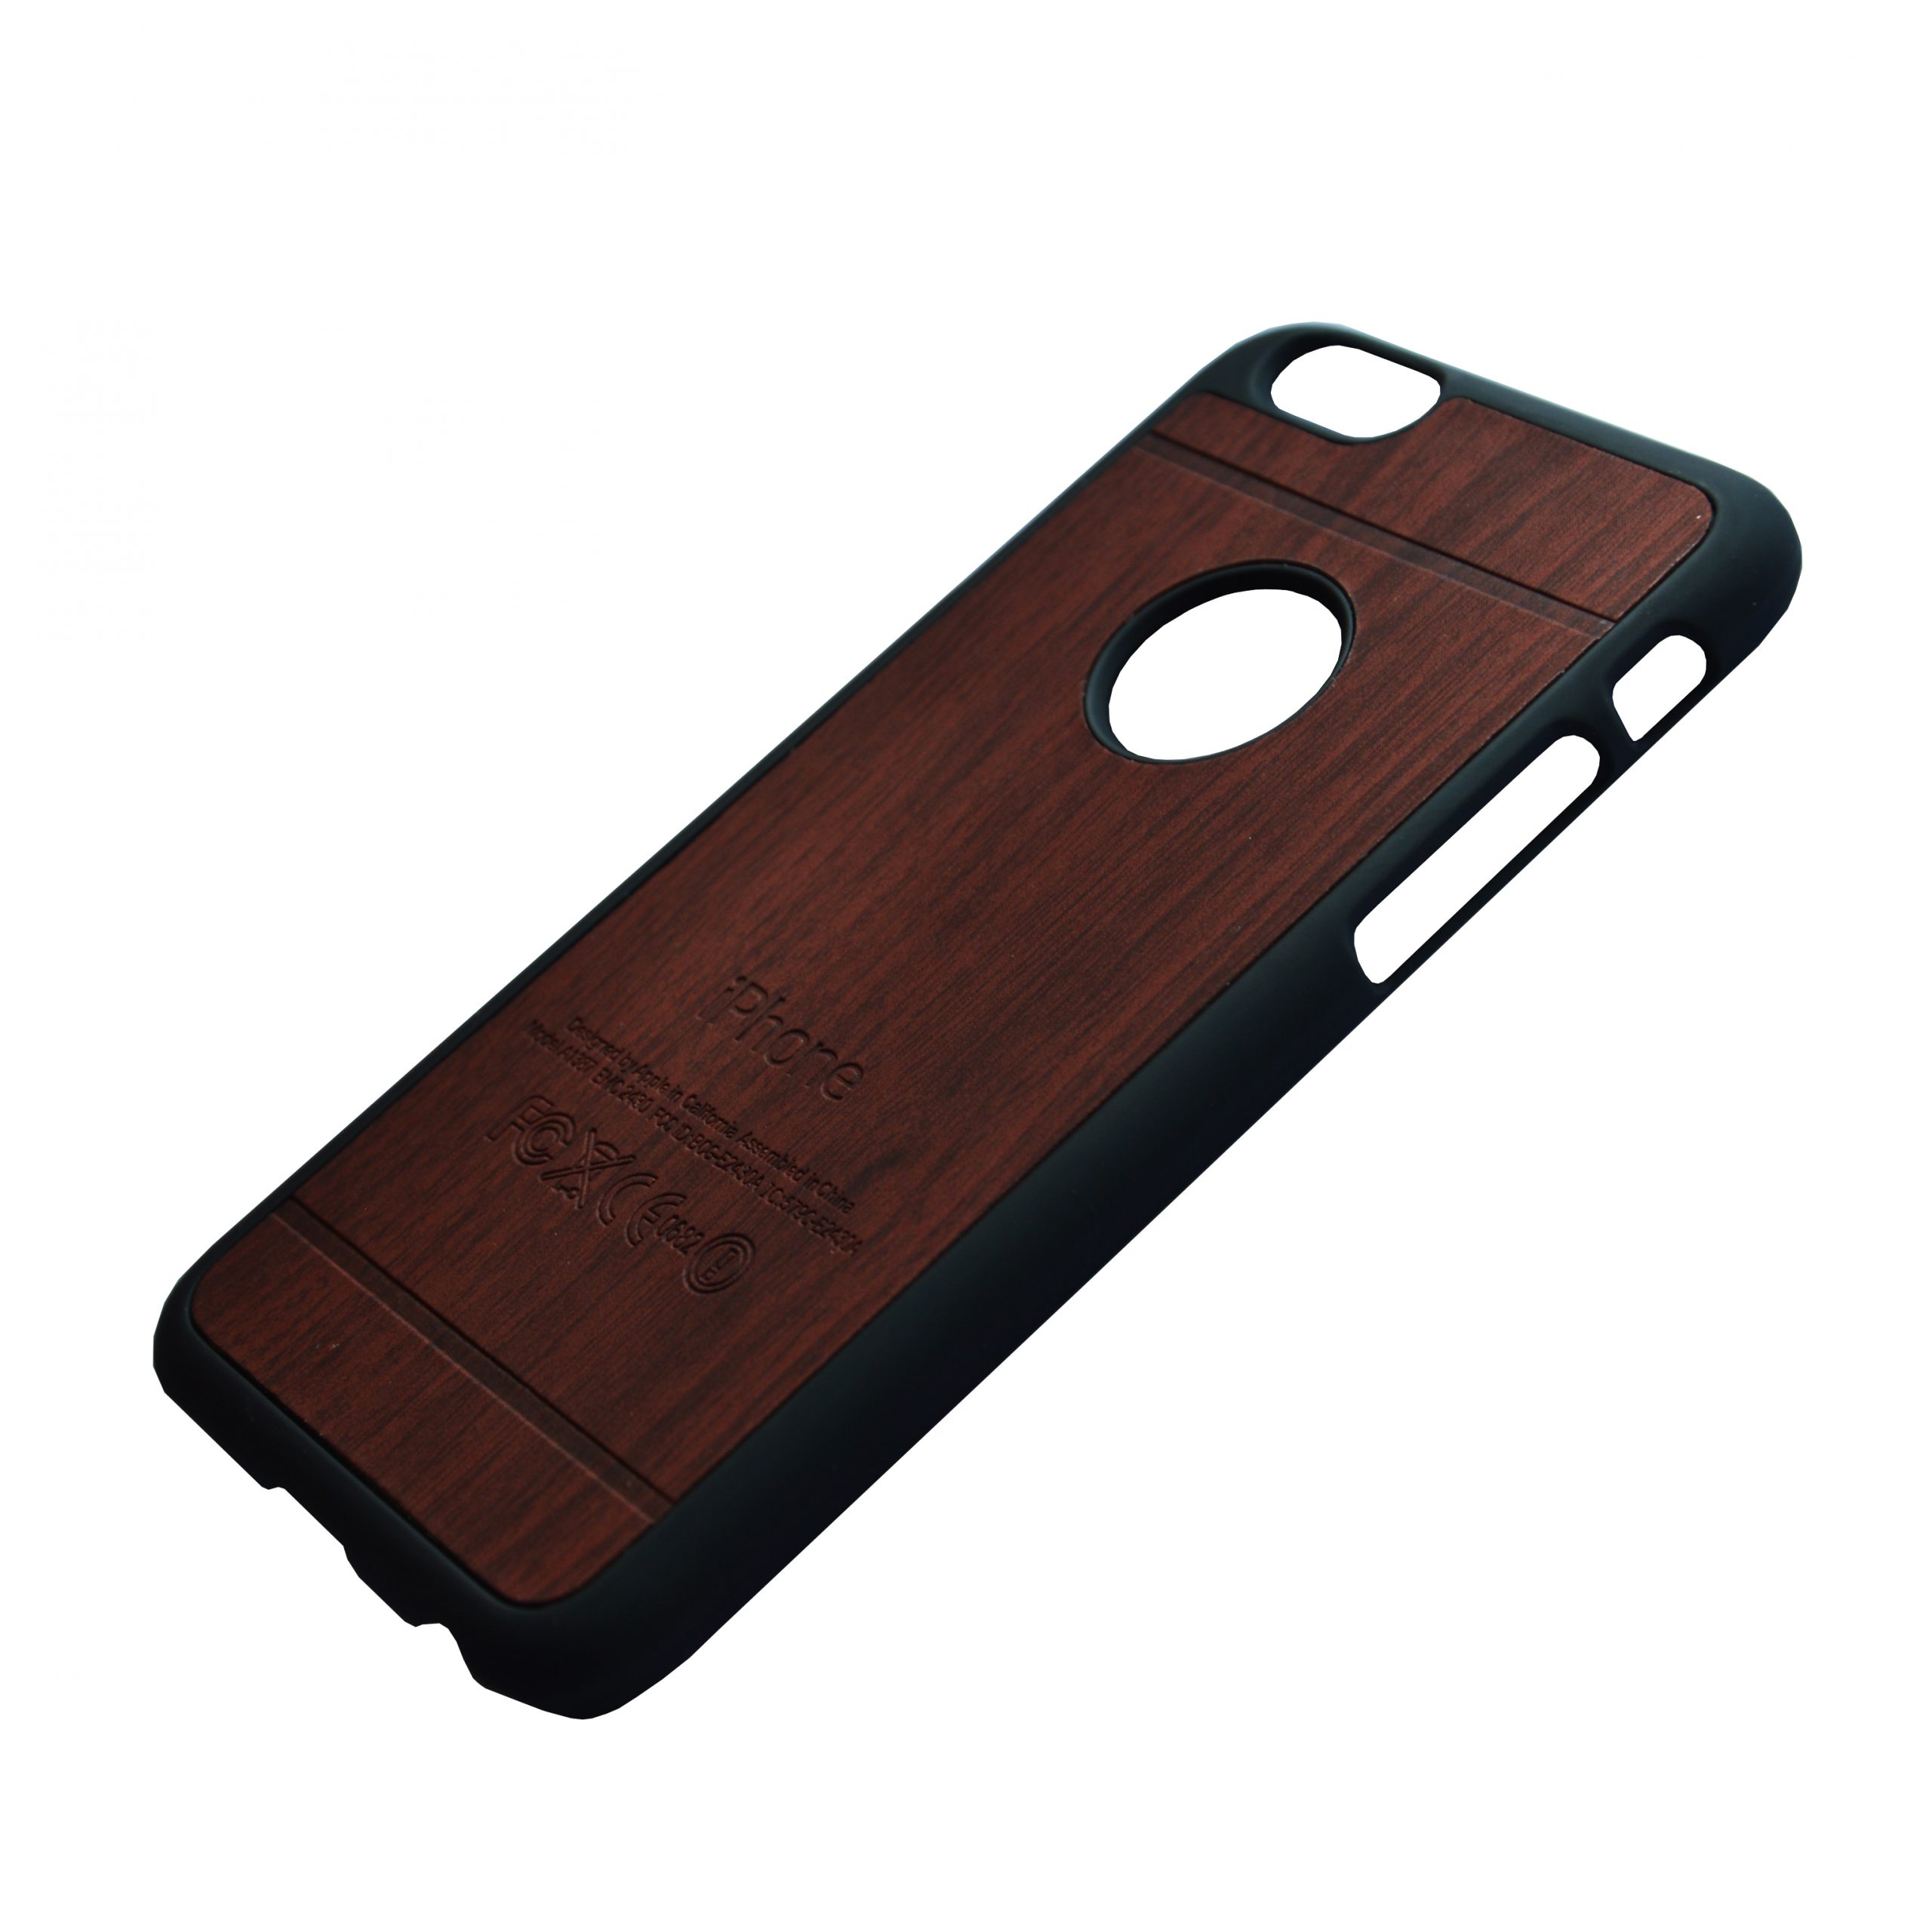 Garderobe Bewijs Werkgever Apple iPhone 6 Luxe hout design hoes Bruinrood - JustXL